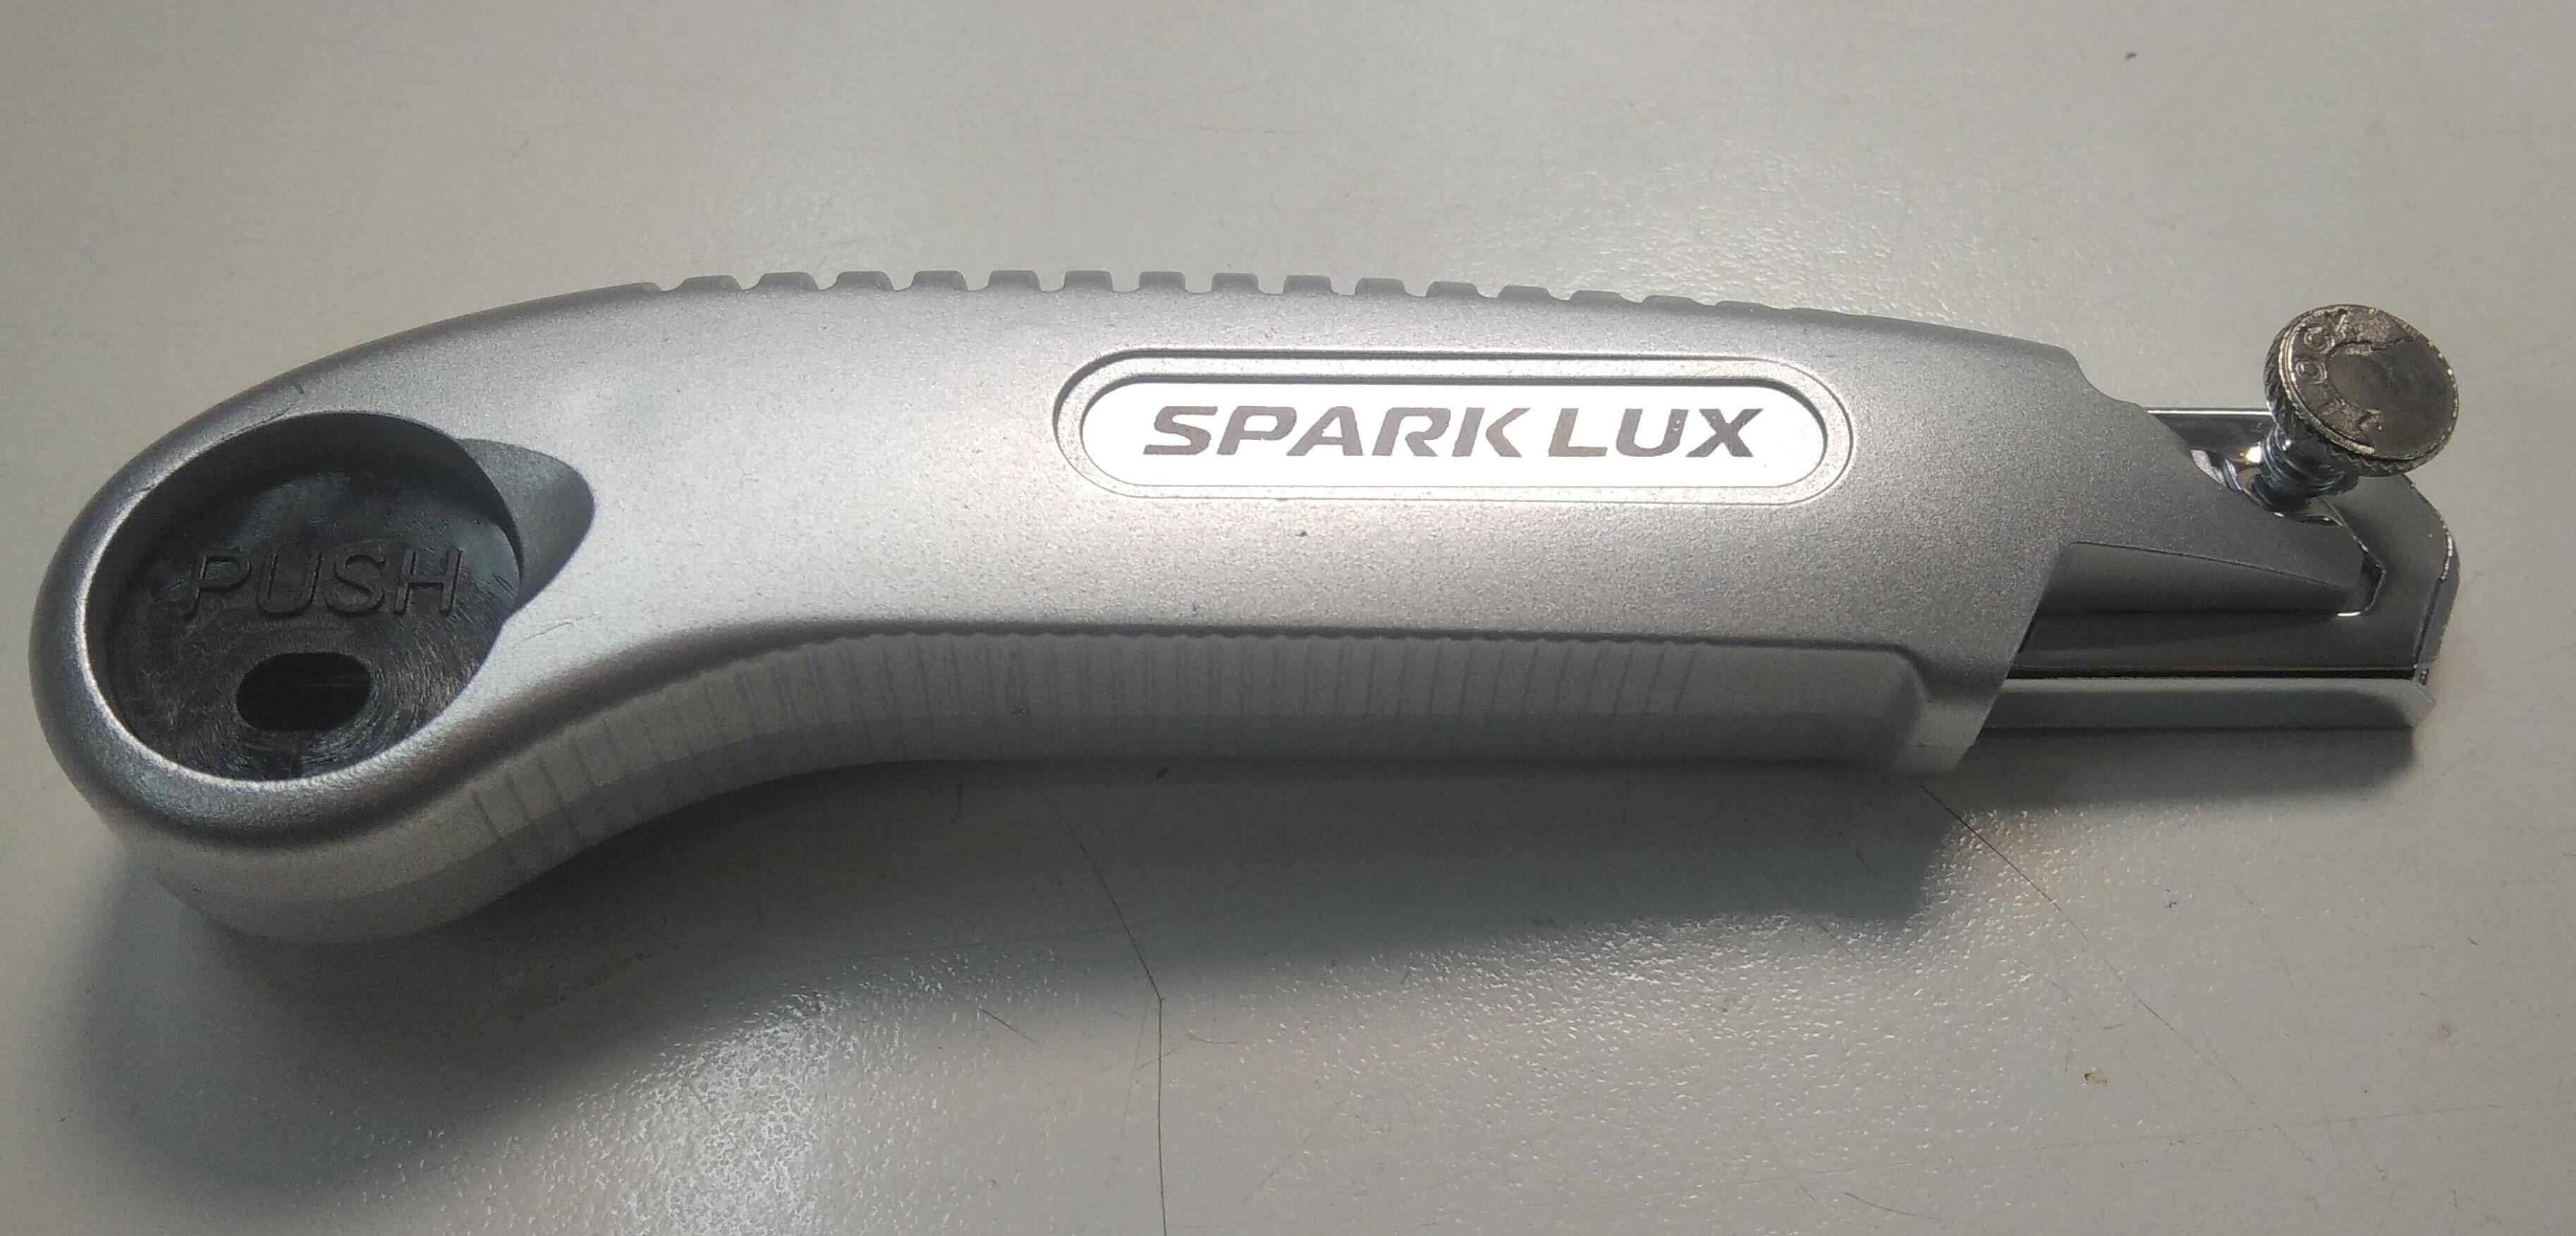 Нож строительный усиленный с кнопкой 5 лезвий SparkLux 0767/4959 (Ф*), код: т8415